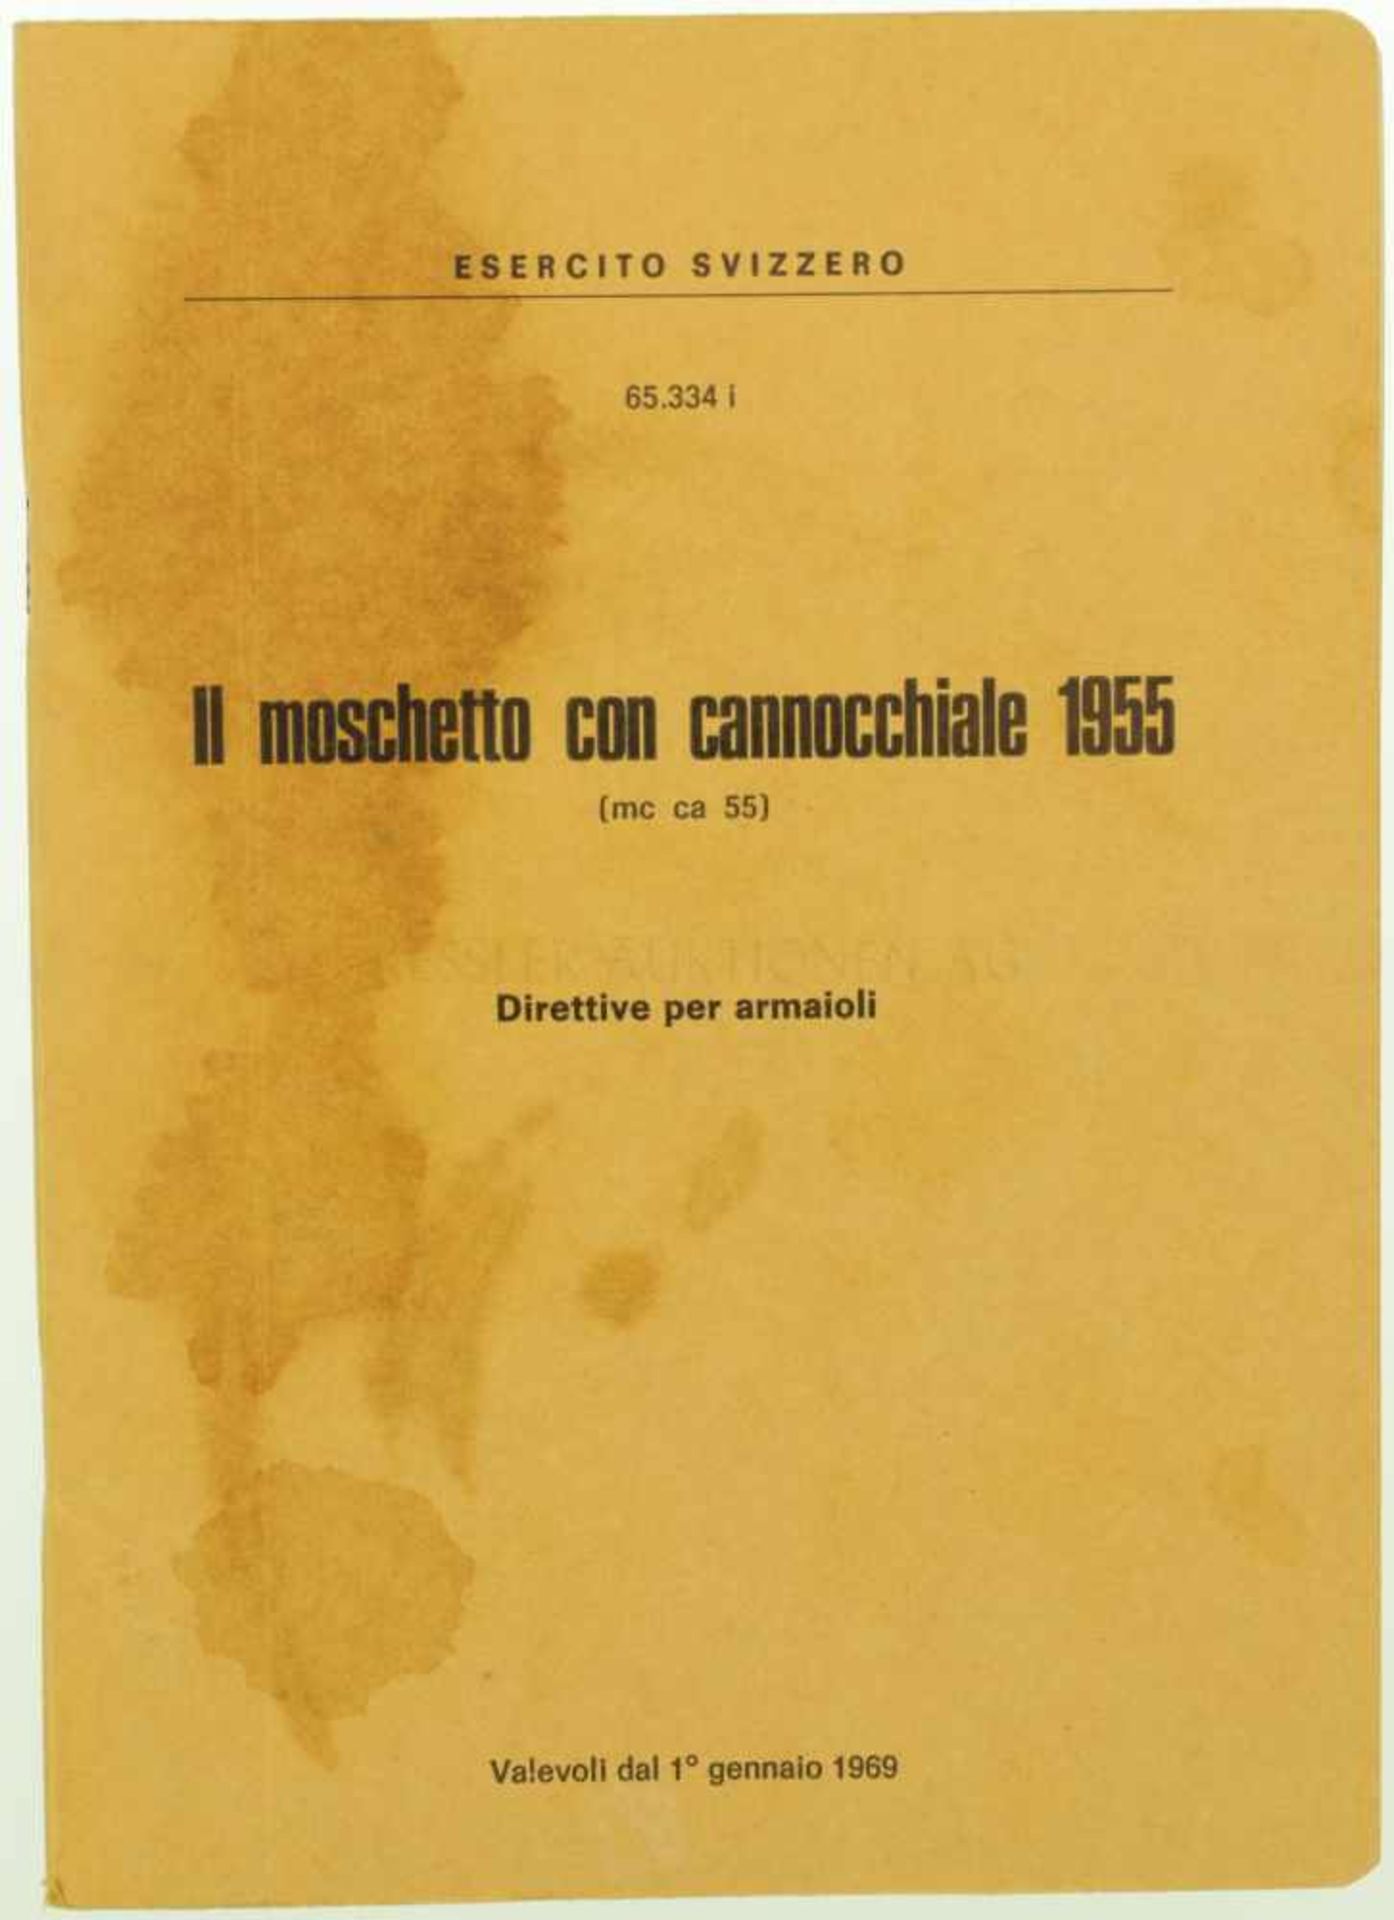 Reglement "Il Moschetto con cannocchiale 1955" (ZFK55) 59-seitige Anleitung in italienischer Sprache